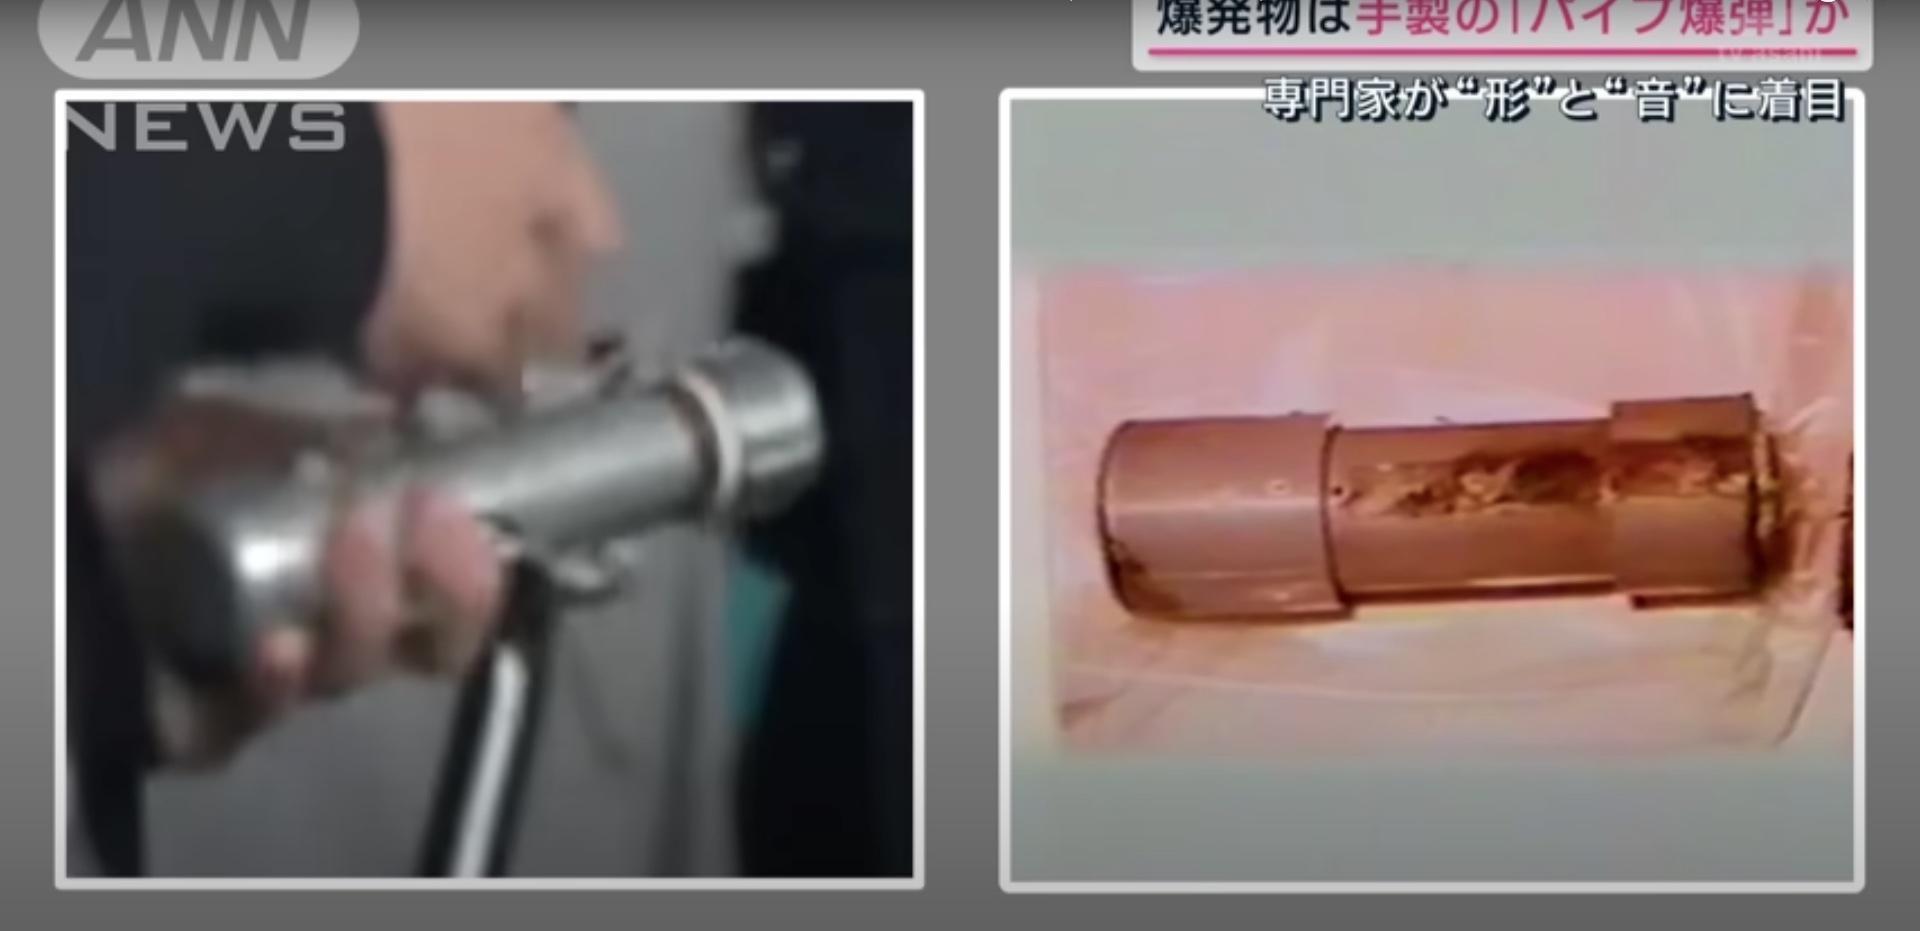 Охоронець прем'єра Японії портфелем відбив на льоту вибуховий пристрій – відео